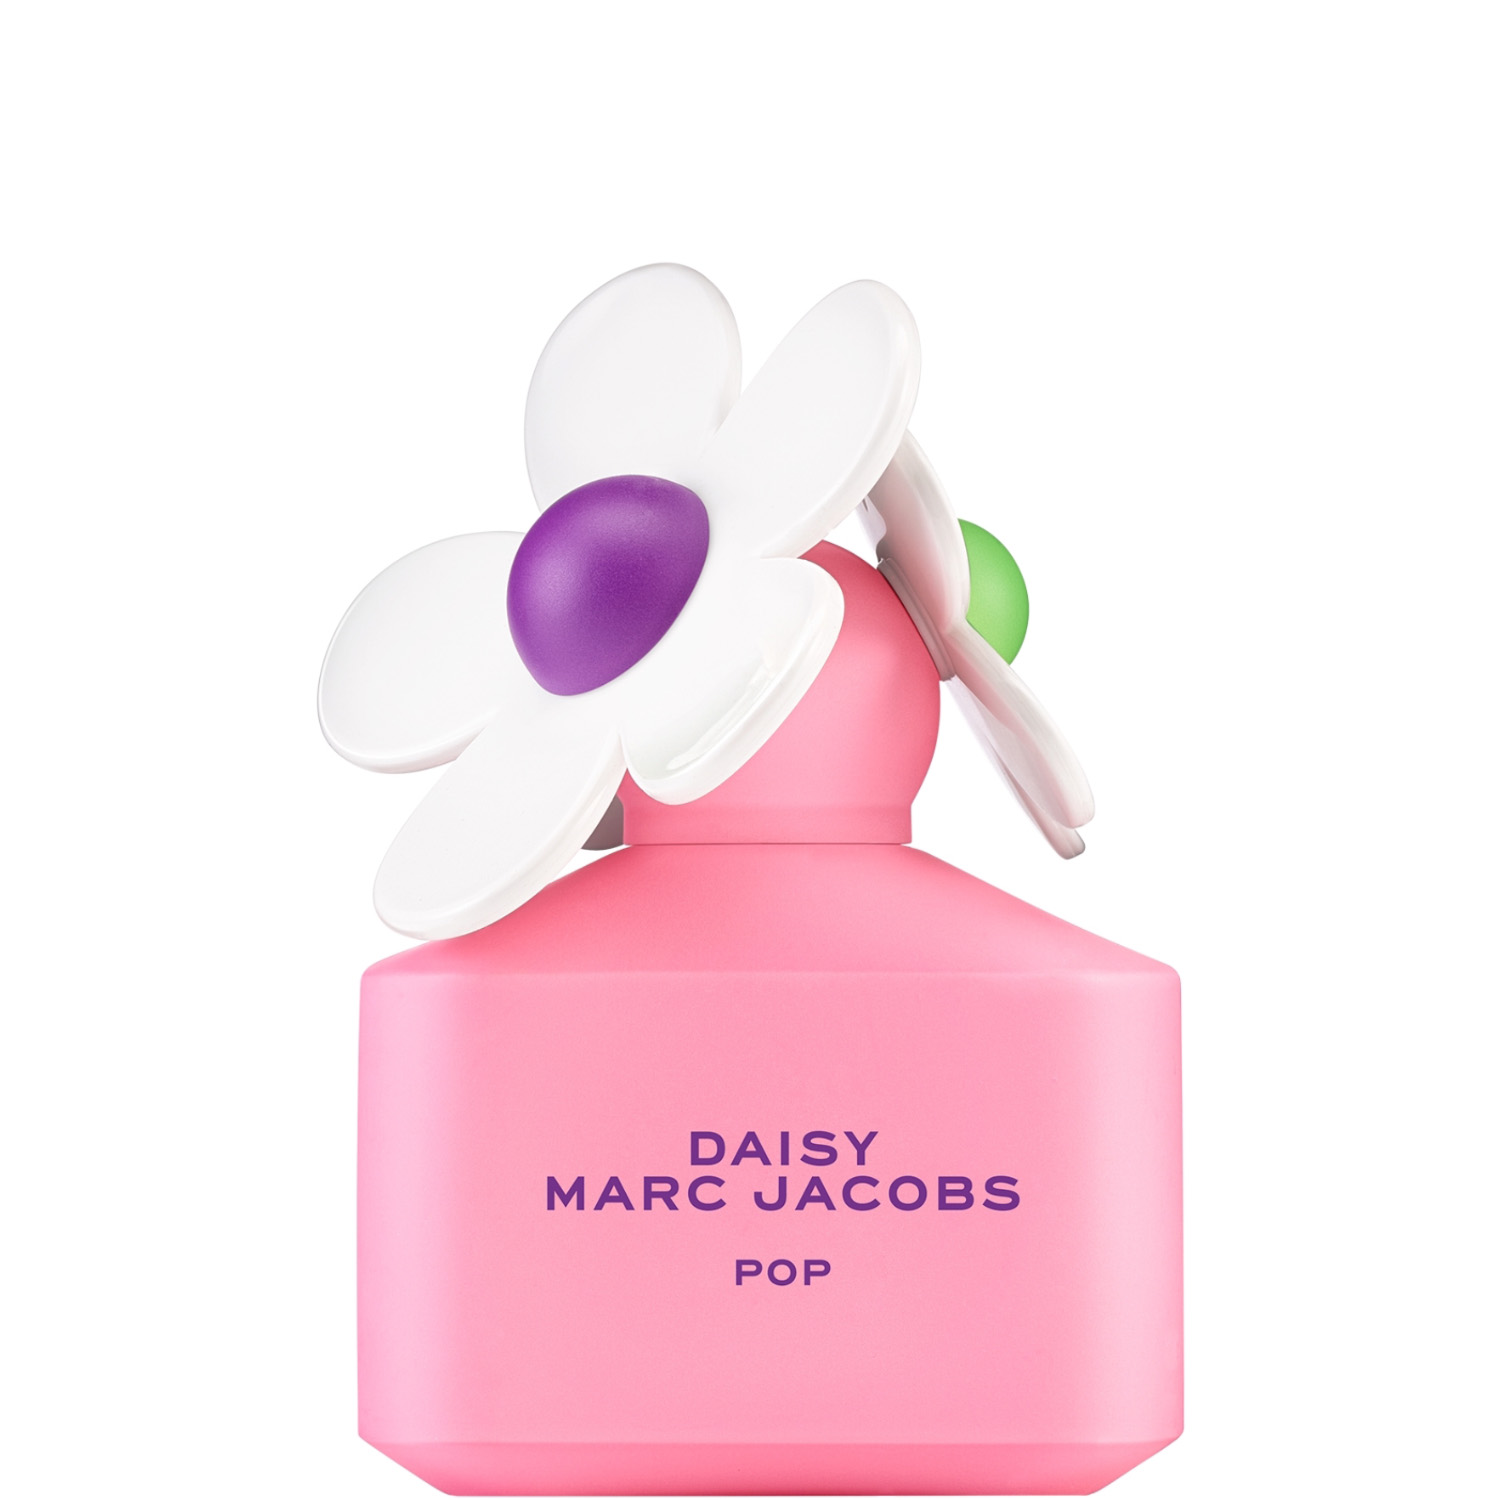 Marc Jacobs Daisy Pop Eau de Toilette 50ml